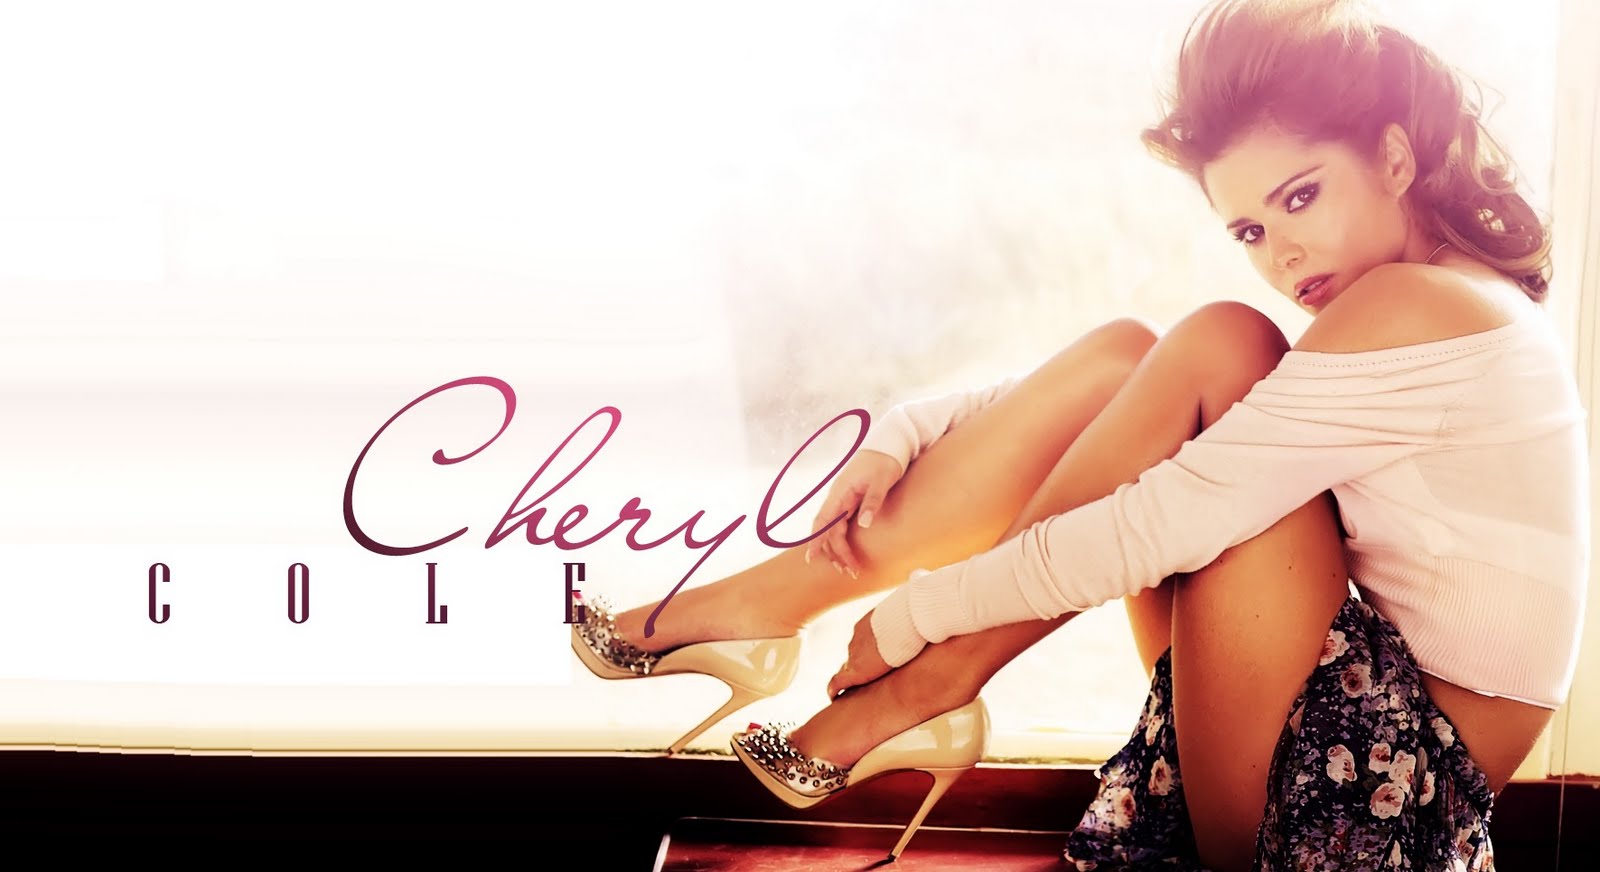 Cheryl mcclain actress